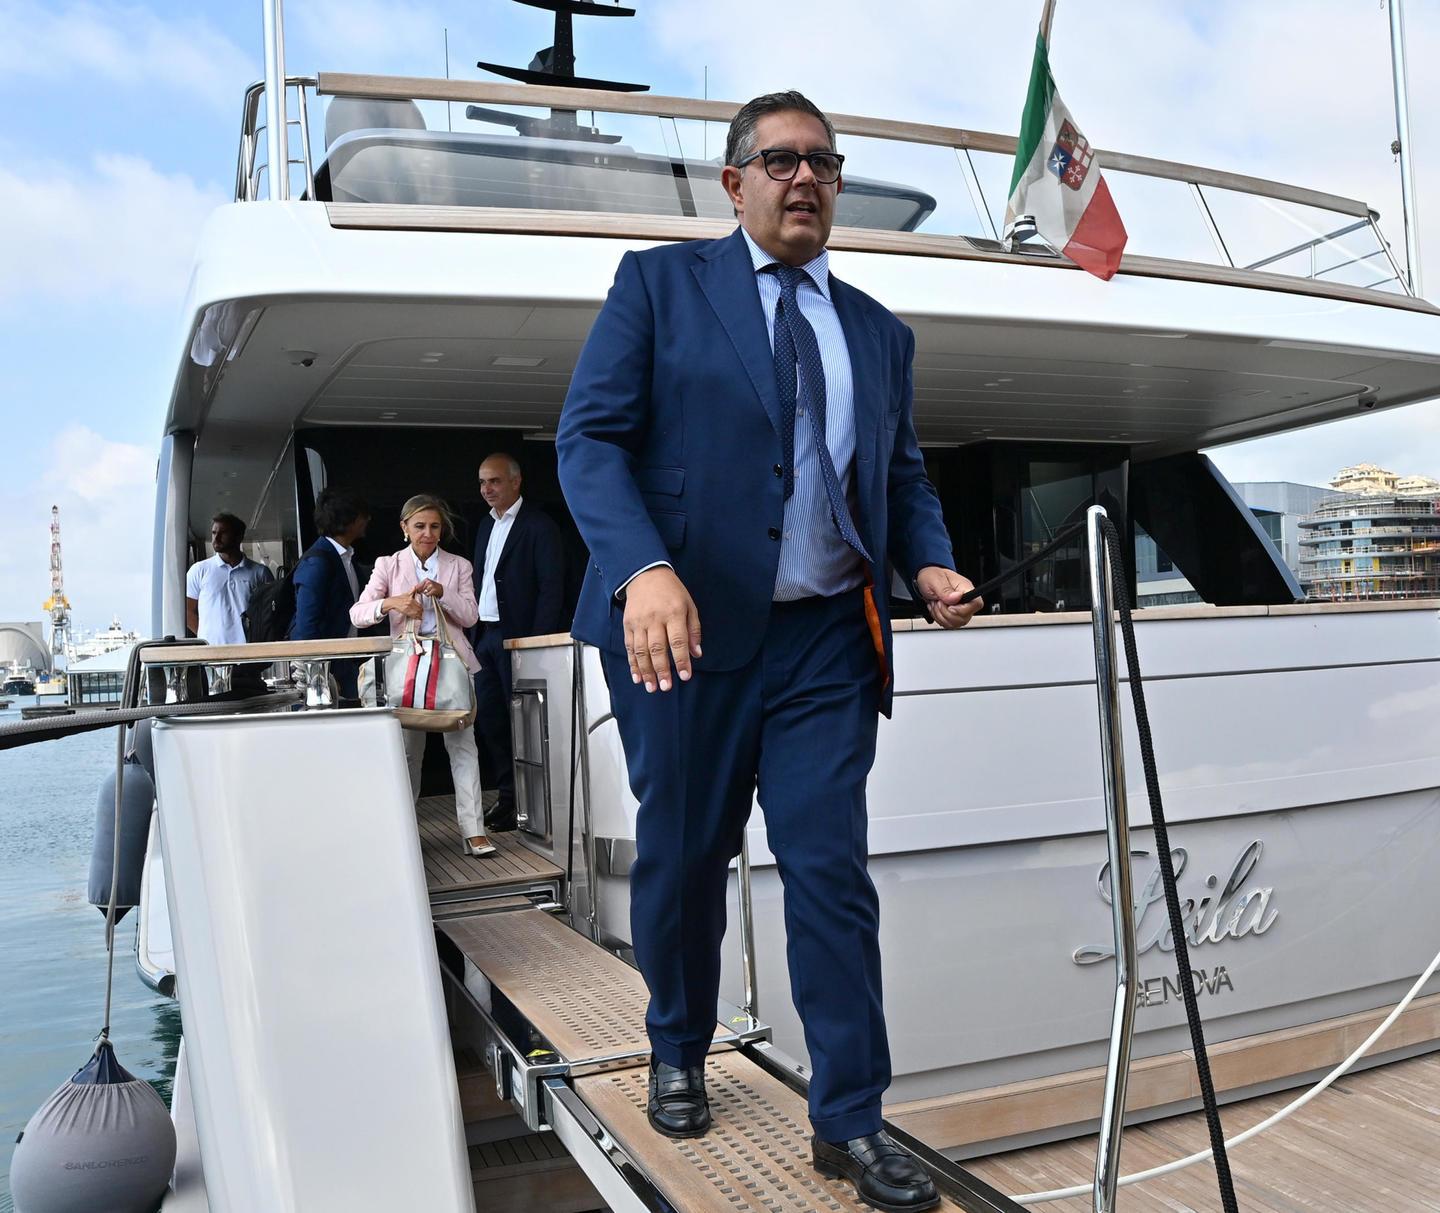 Gli incontri sullo yacht di Spinelli con Toti e Signorini (senza cellulari), a casa dell’imprenditore trovati 220mila euro